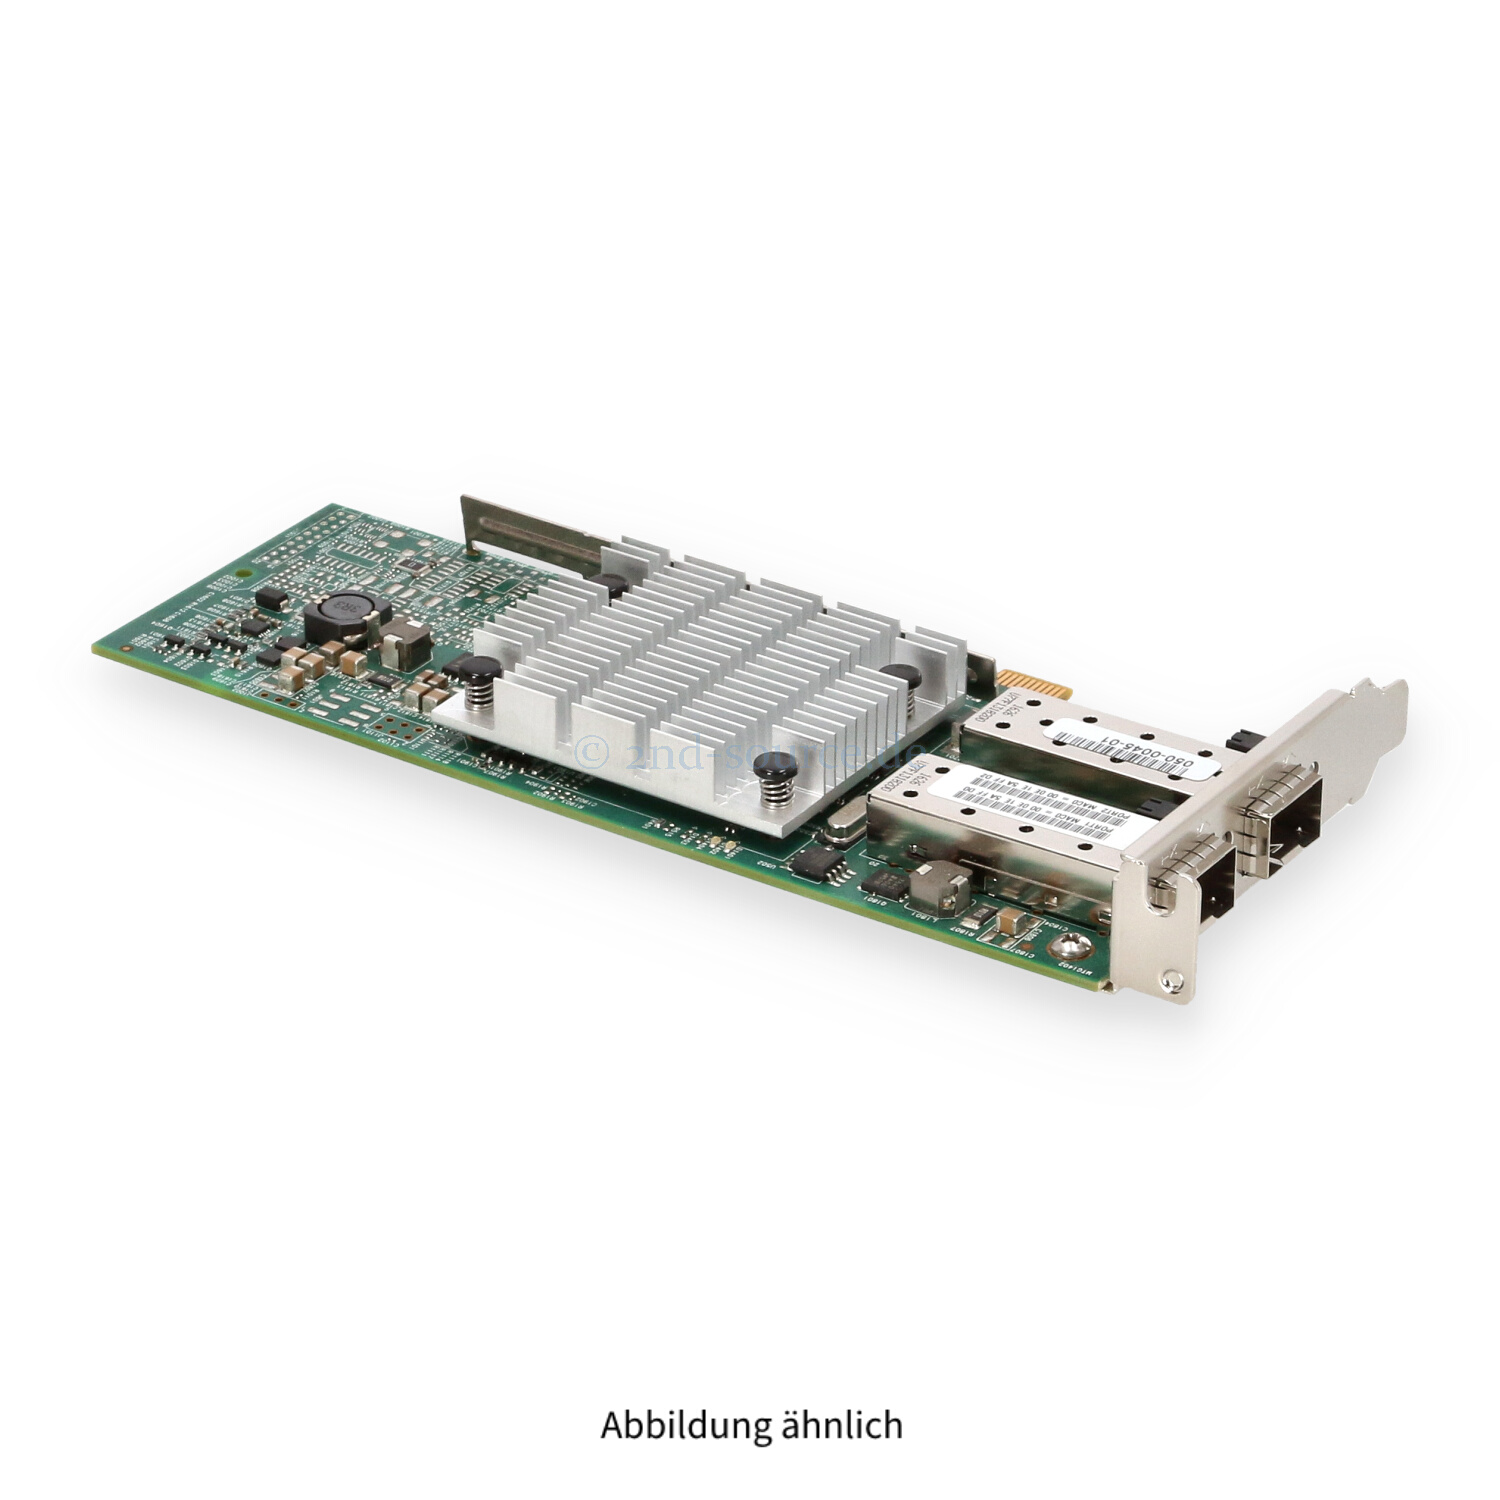 EMC Broadcom 957810A 2x 10GB SFP+ PCIe x8 Server Ethernet Adapter Low Profile 050-0045-01 BC0210406-01